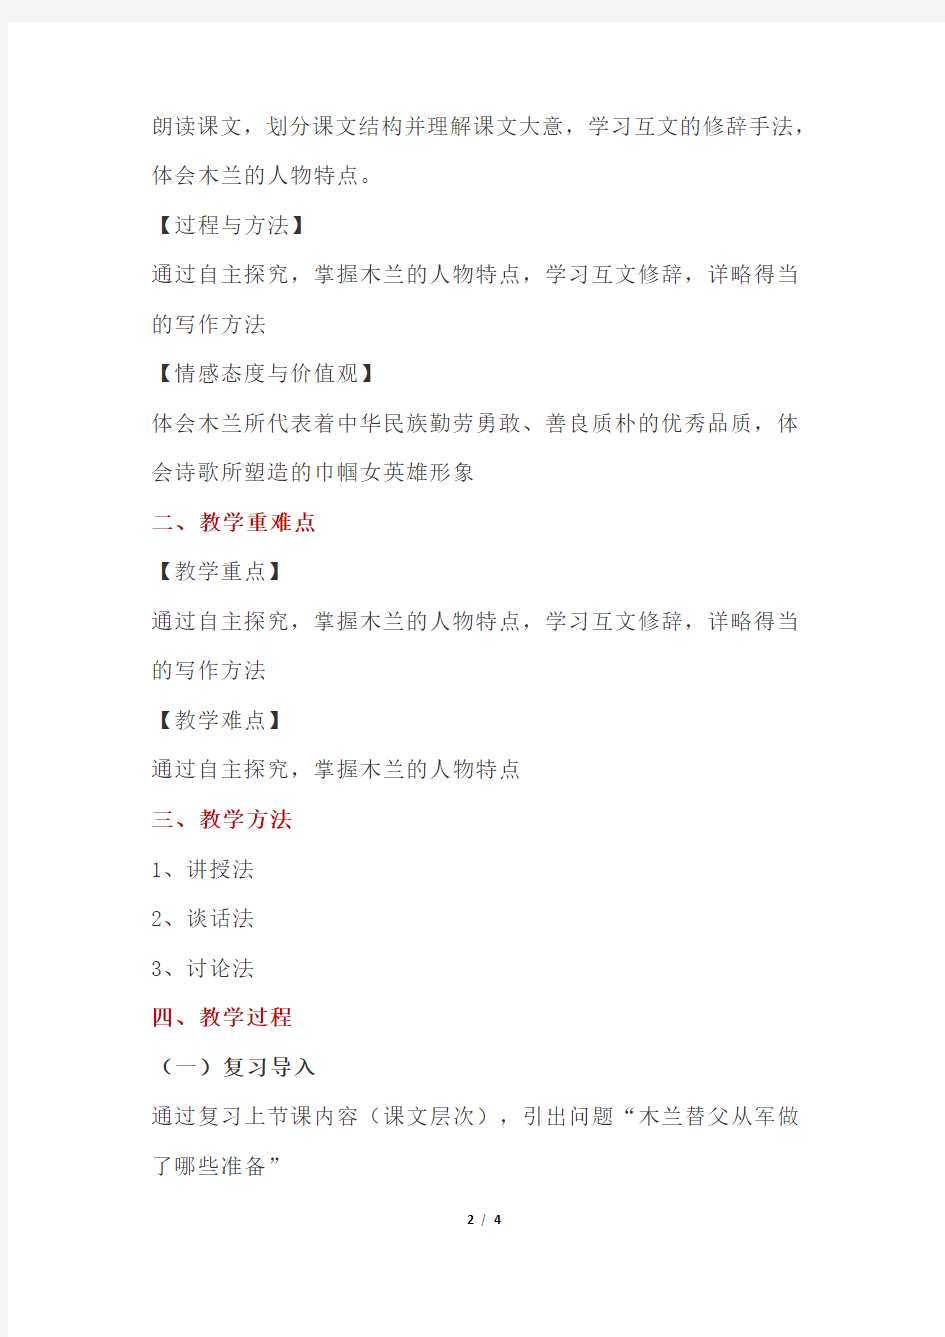 初中语文教案范例《木兰诗》